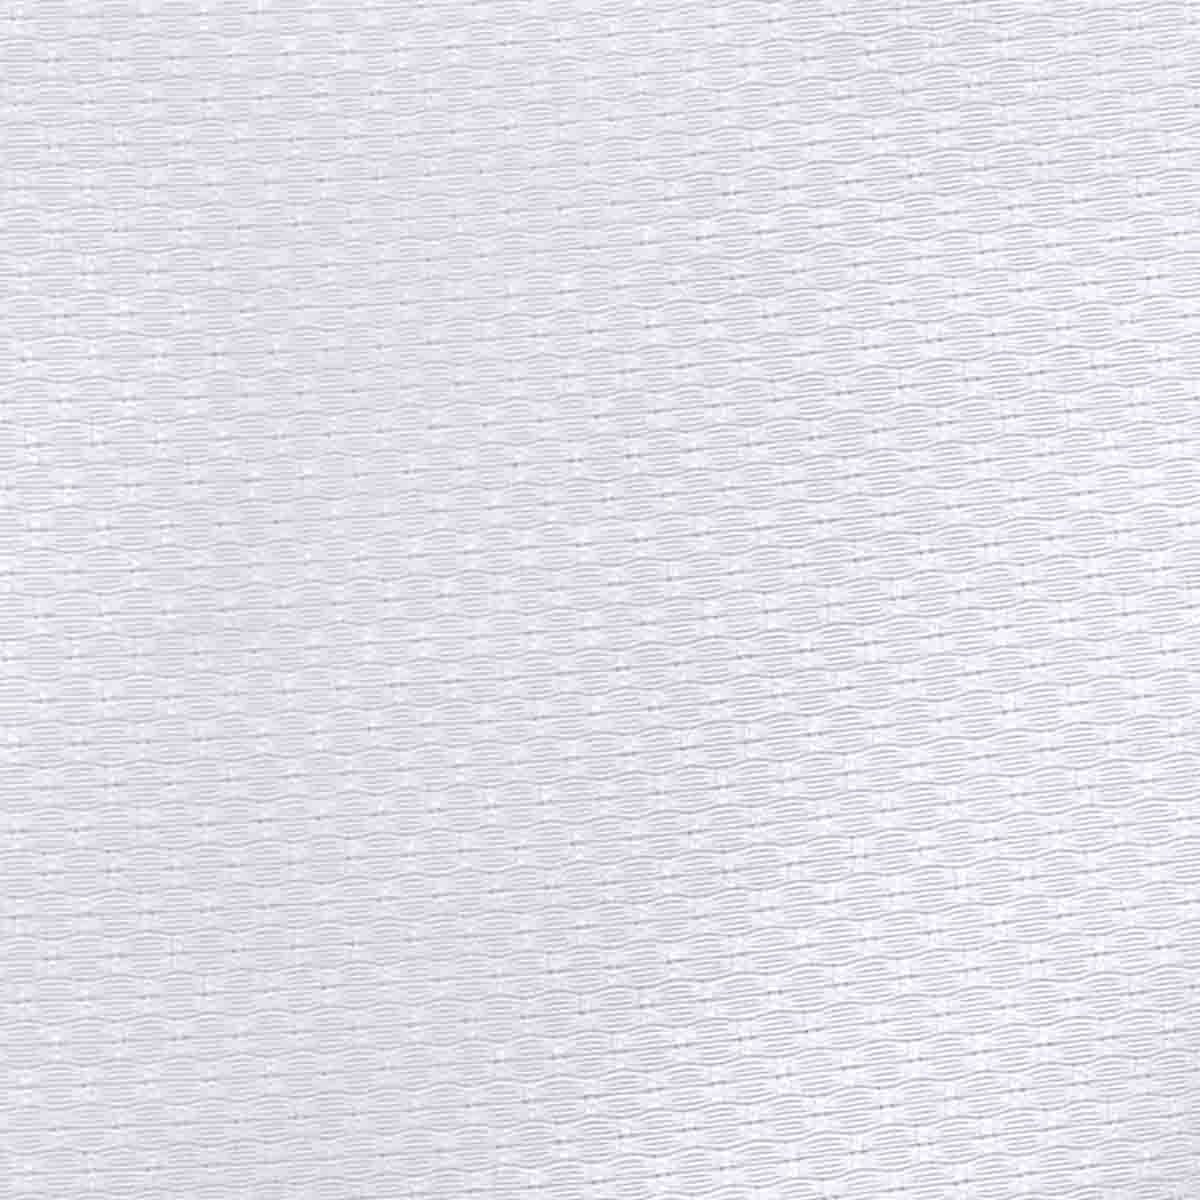 Camisa de Vestir Color Blanco Nina Ricci